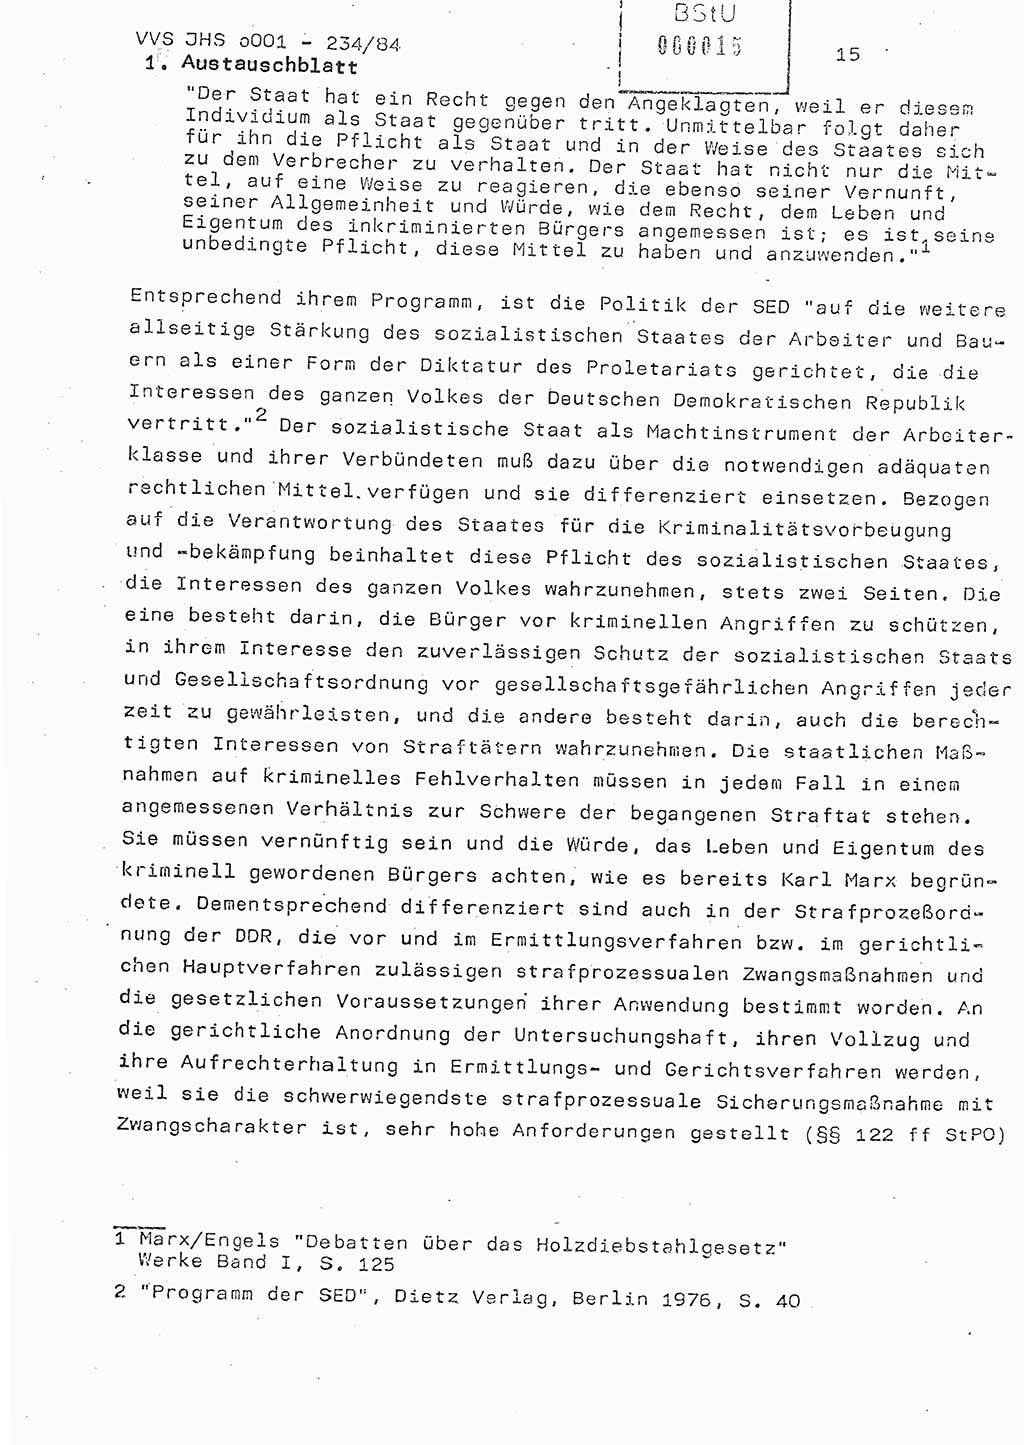 Dissertation Oberst Siegfried Rataizick (Abt. ⅩⅣ), Oberstleutnant Volkmar Heinz (Abt. ⅩⅣ), Oberstleutnant Werner Stein (HA Ⅸ), Hauptmann Heinz Conrad (JHS), Ministerium für Staatssicherheit (MfS) [Deutsche Demokratische Republik (DDR)], Juristische Hochschule (JHS), Vertrauliche Verschlußsache (VVS) o001-234/84, Potsdam 1984, Seite 15 (Diss. MfS DDR JHS VVS o001-234/84 1984, S. 15)